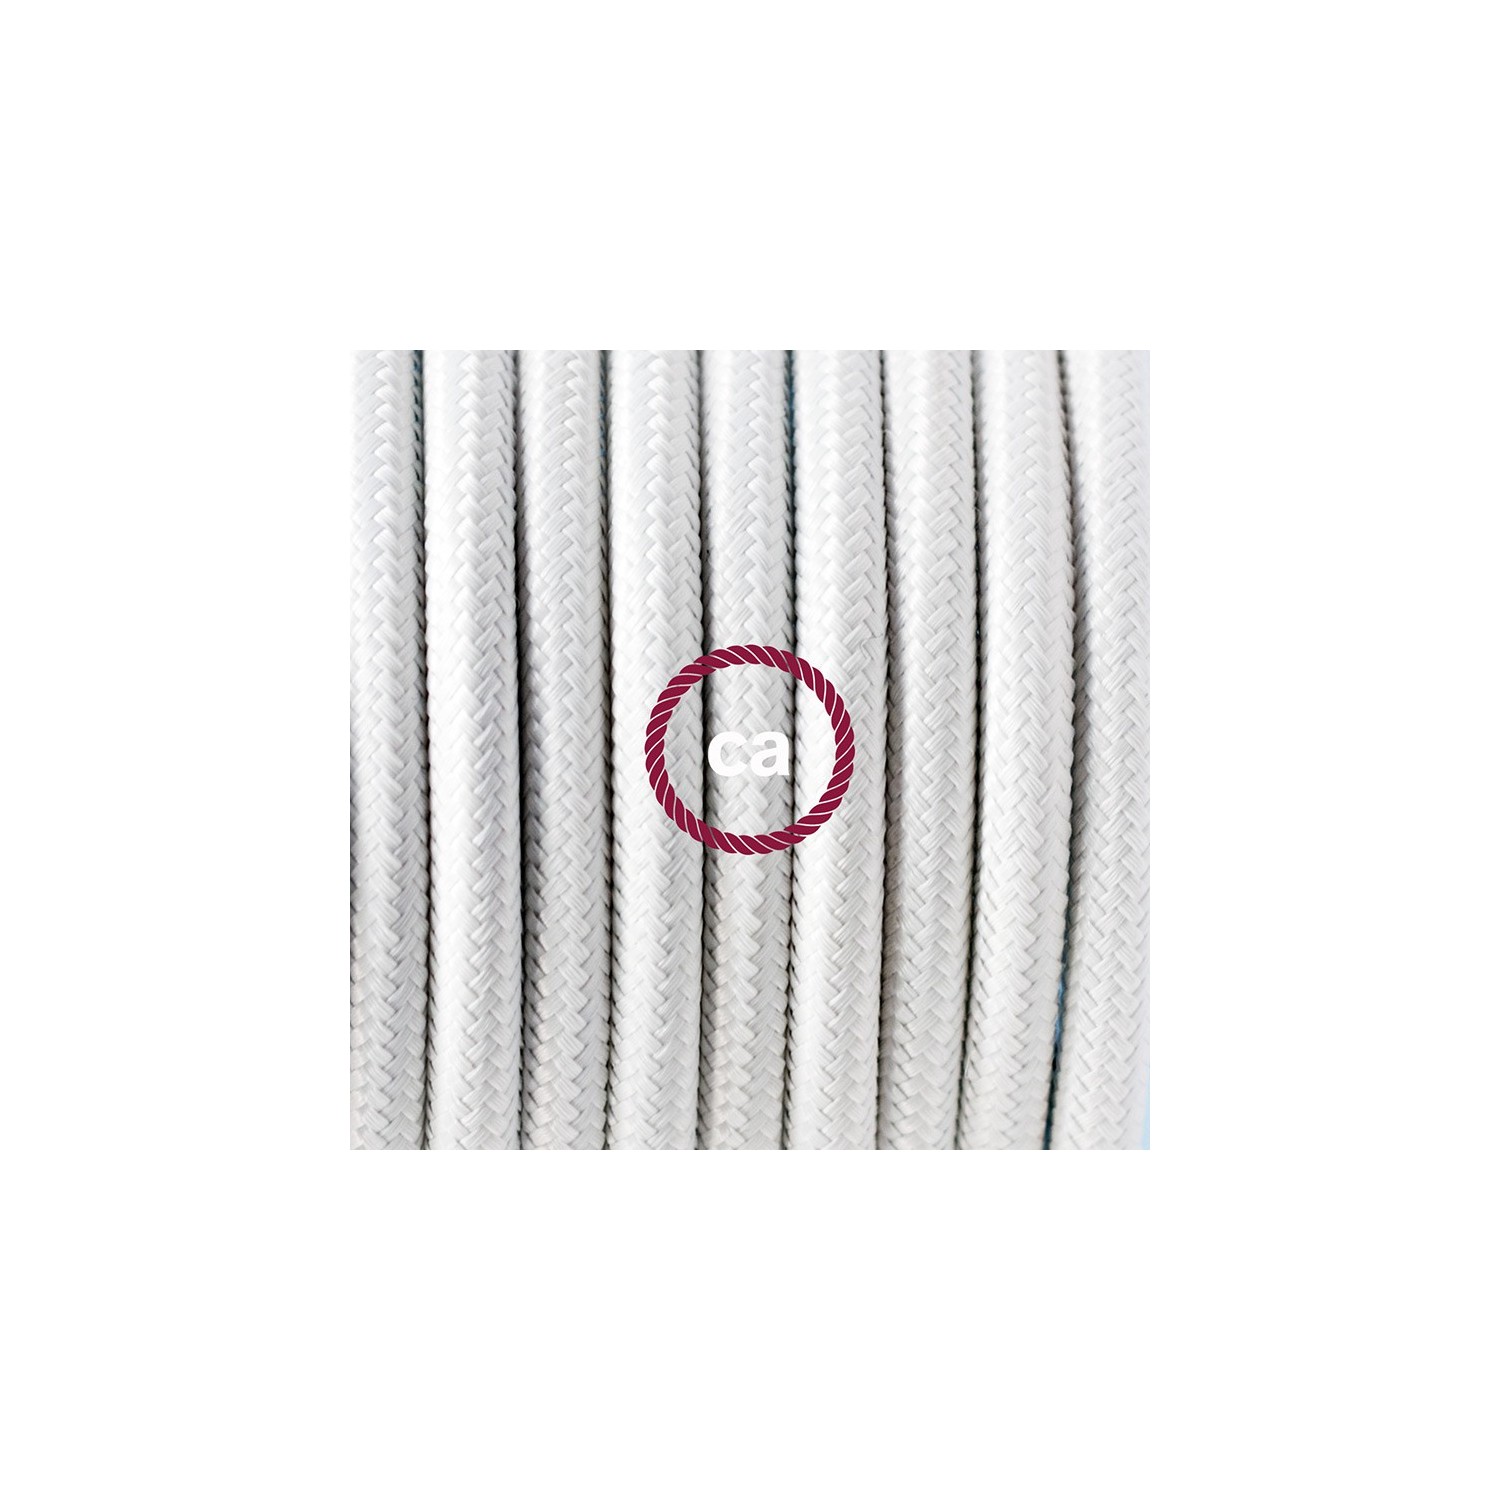 Zuleitung für Tischleuchten RM01 Weiß Seideneffekt 1,80 m. Wählen Sie aus drei Farben bei Schalter und Stecke.